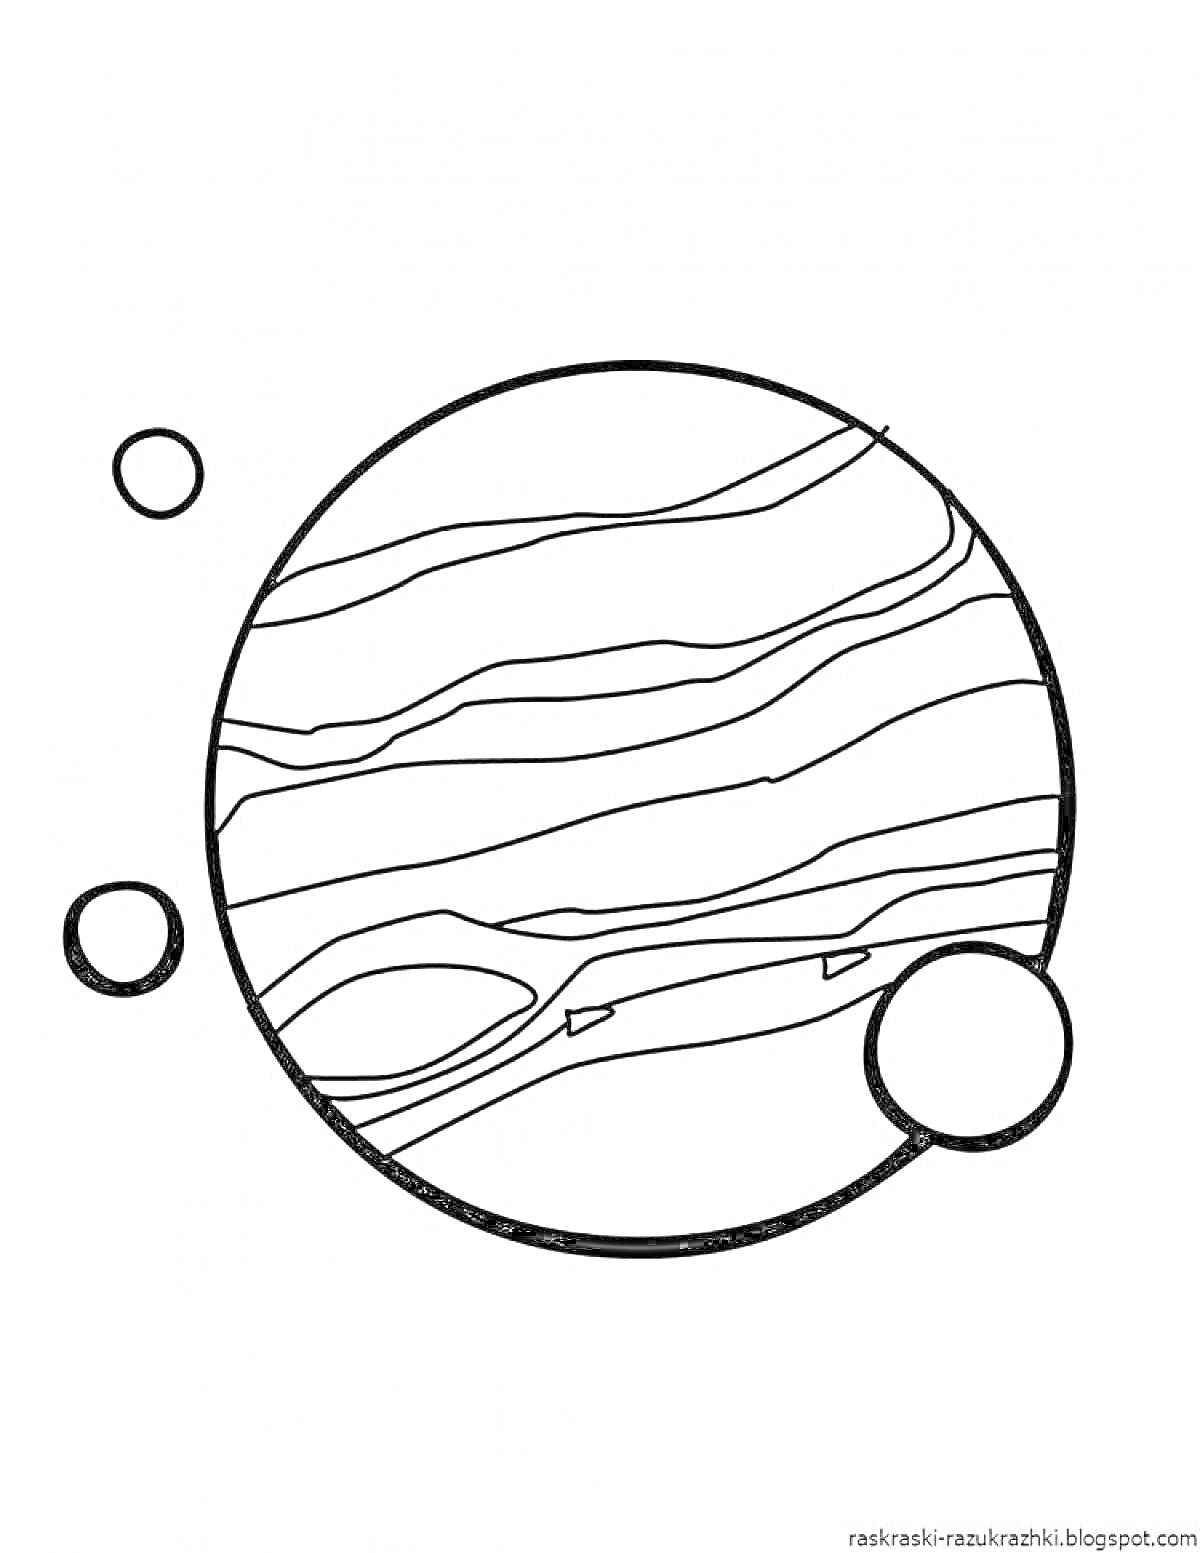 Раскраска Планета с полосами, окруженная четырьмя спутниками